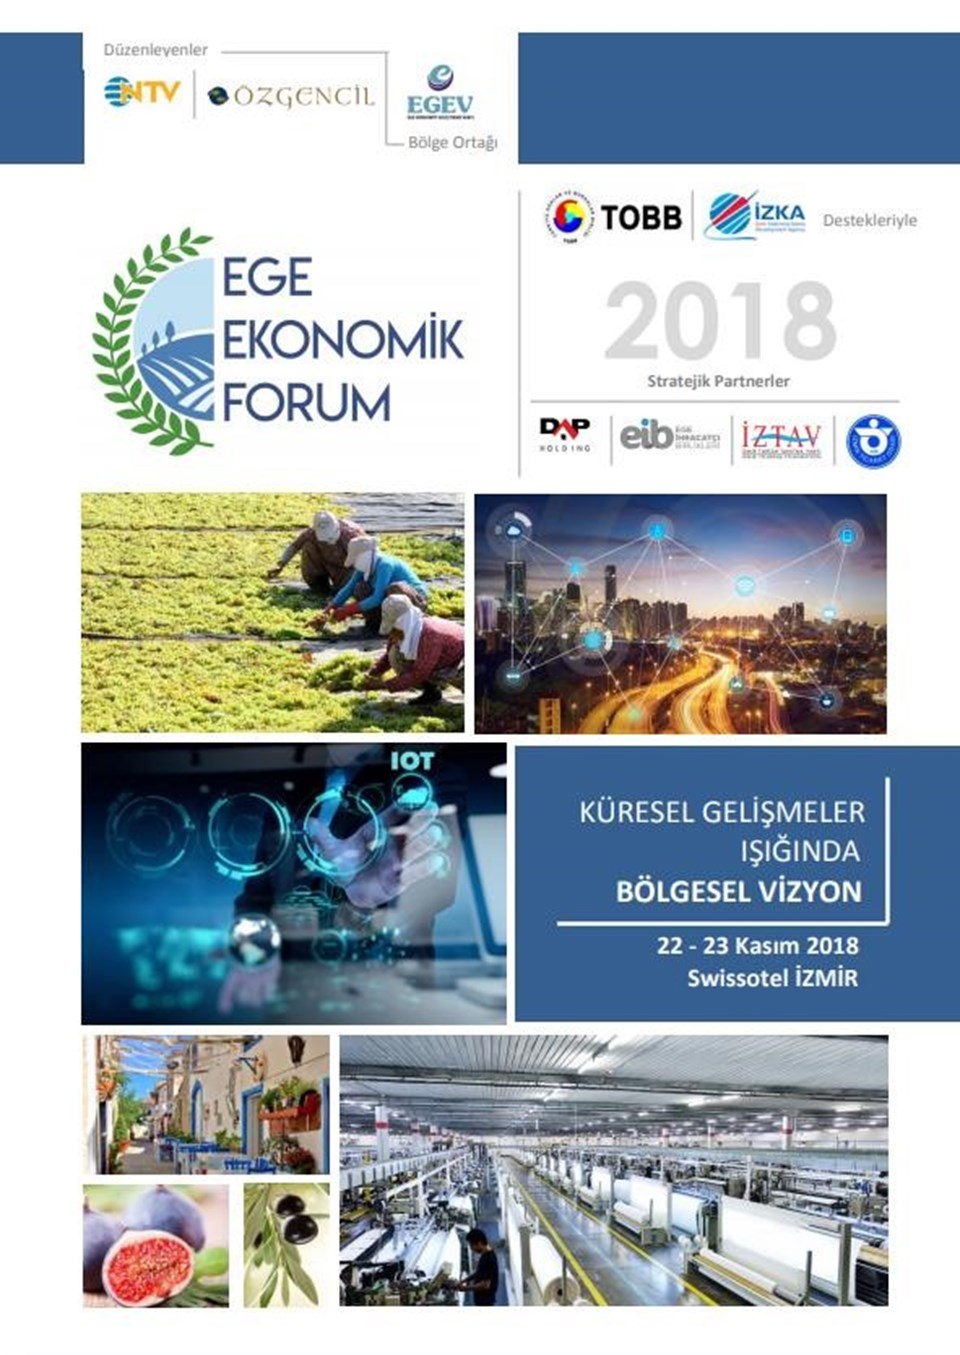 Ege Ekonomik Forum 2018 başlıyor (İşte program) - 1